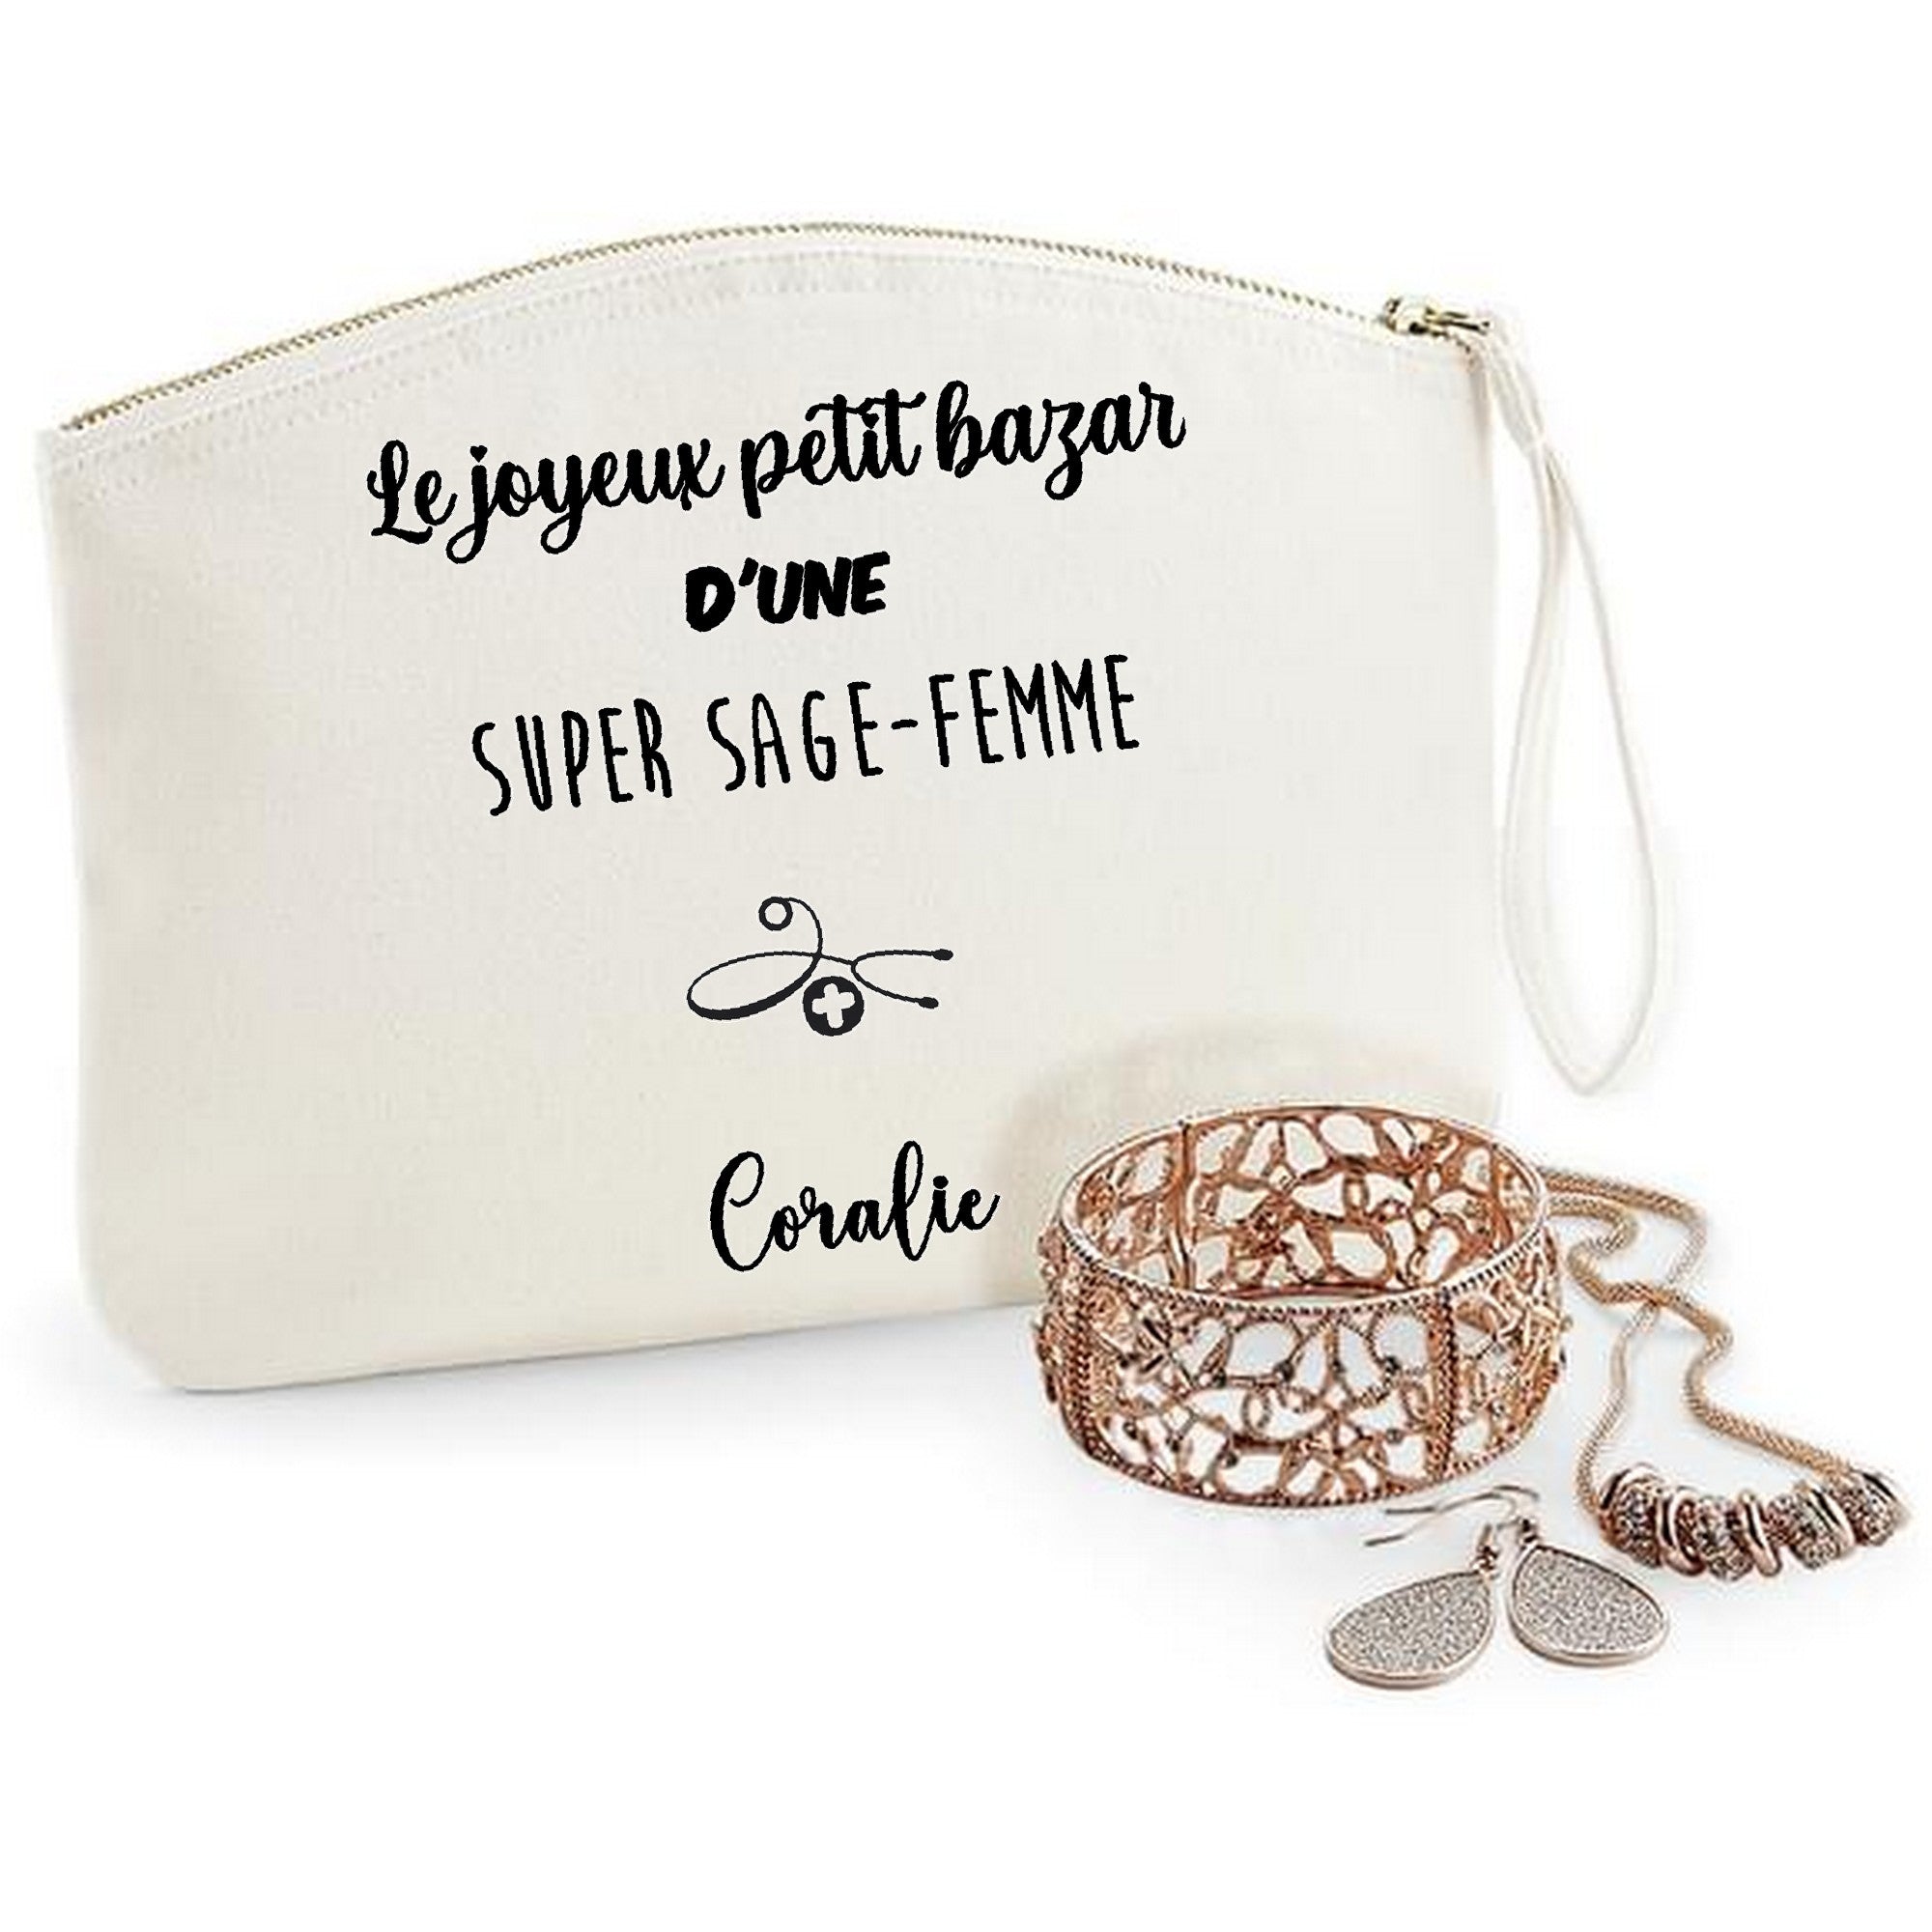 Pochette Petit bazar d'une super nounou – Cool and the bag